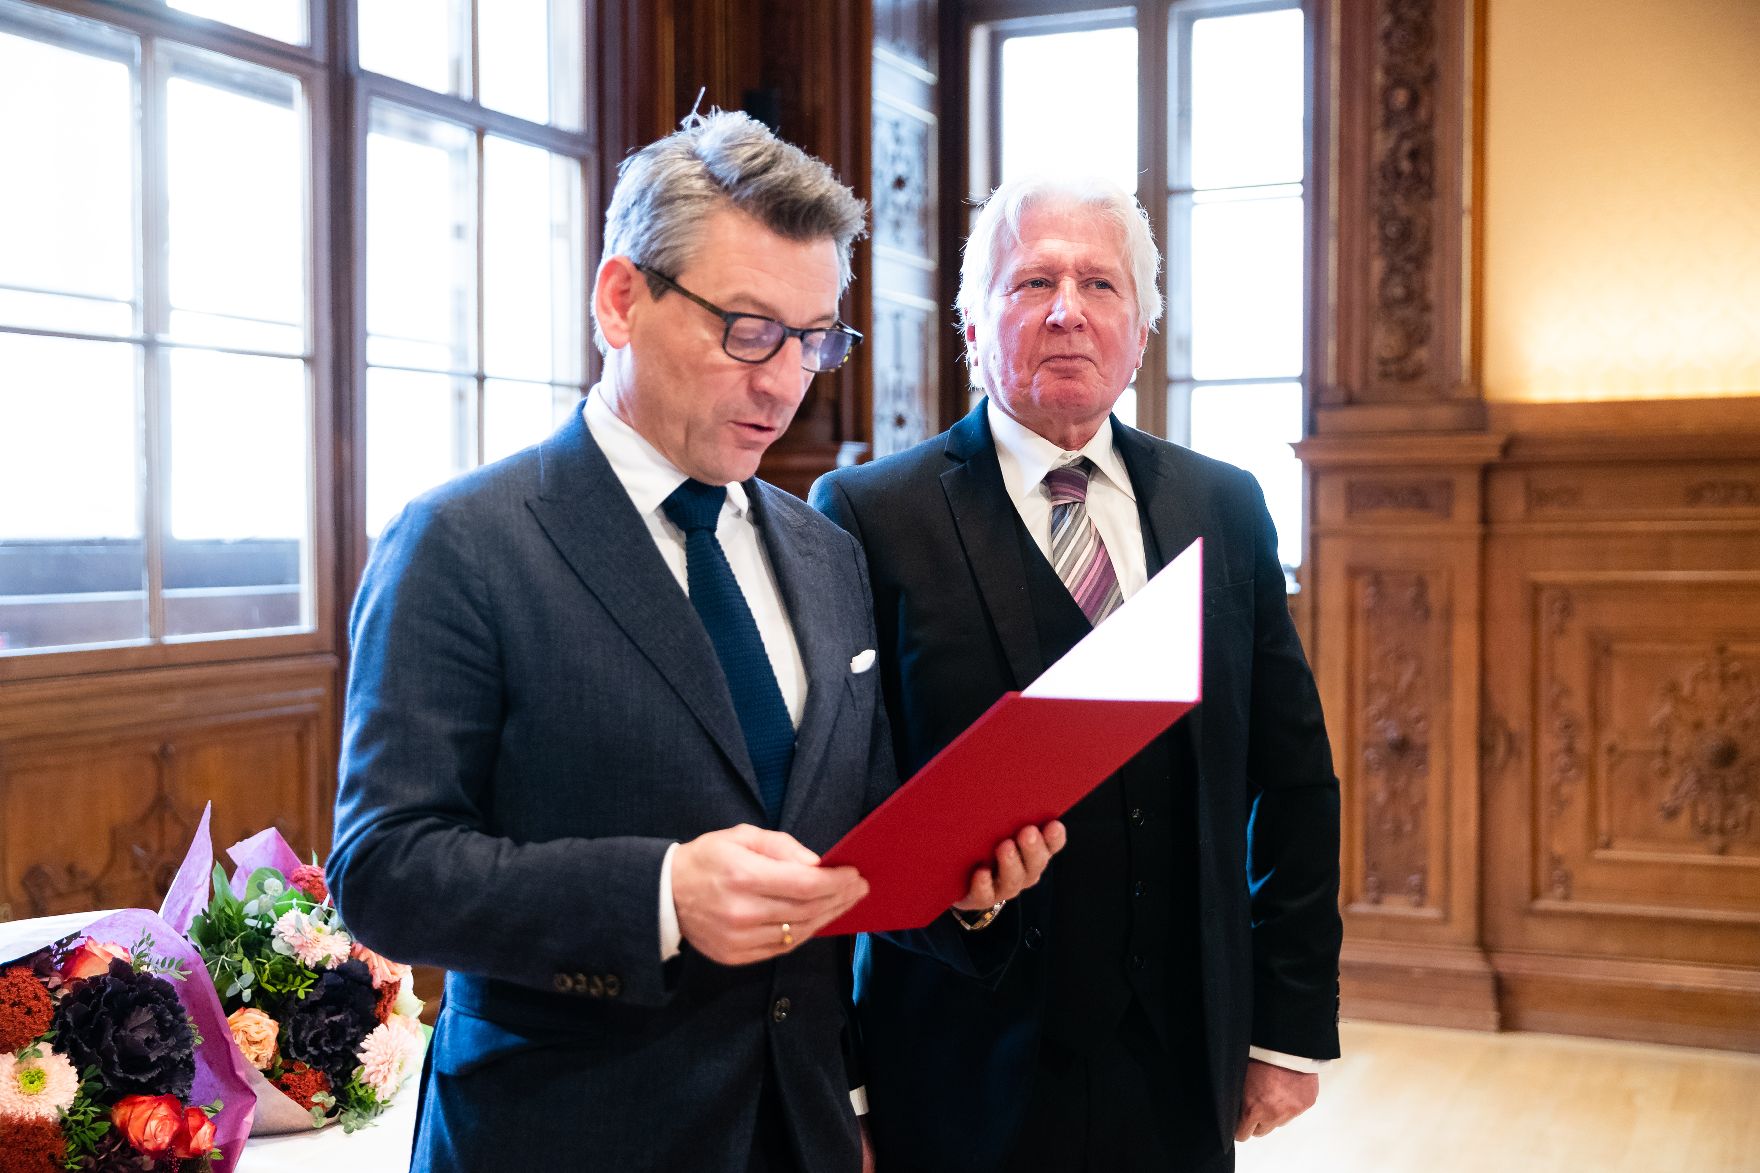 Am 22. November 2019 überreichte Sektionschef Jürgen Meindl (l.) das Goldene Ehrenzeichen für Verdienste um die Republik Österreich an Erich Martin Wolf und die Urkunde, mit der Wolfgang Klivana (r.) der Berufstitel Professor verliehen wurde.